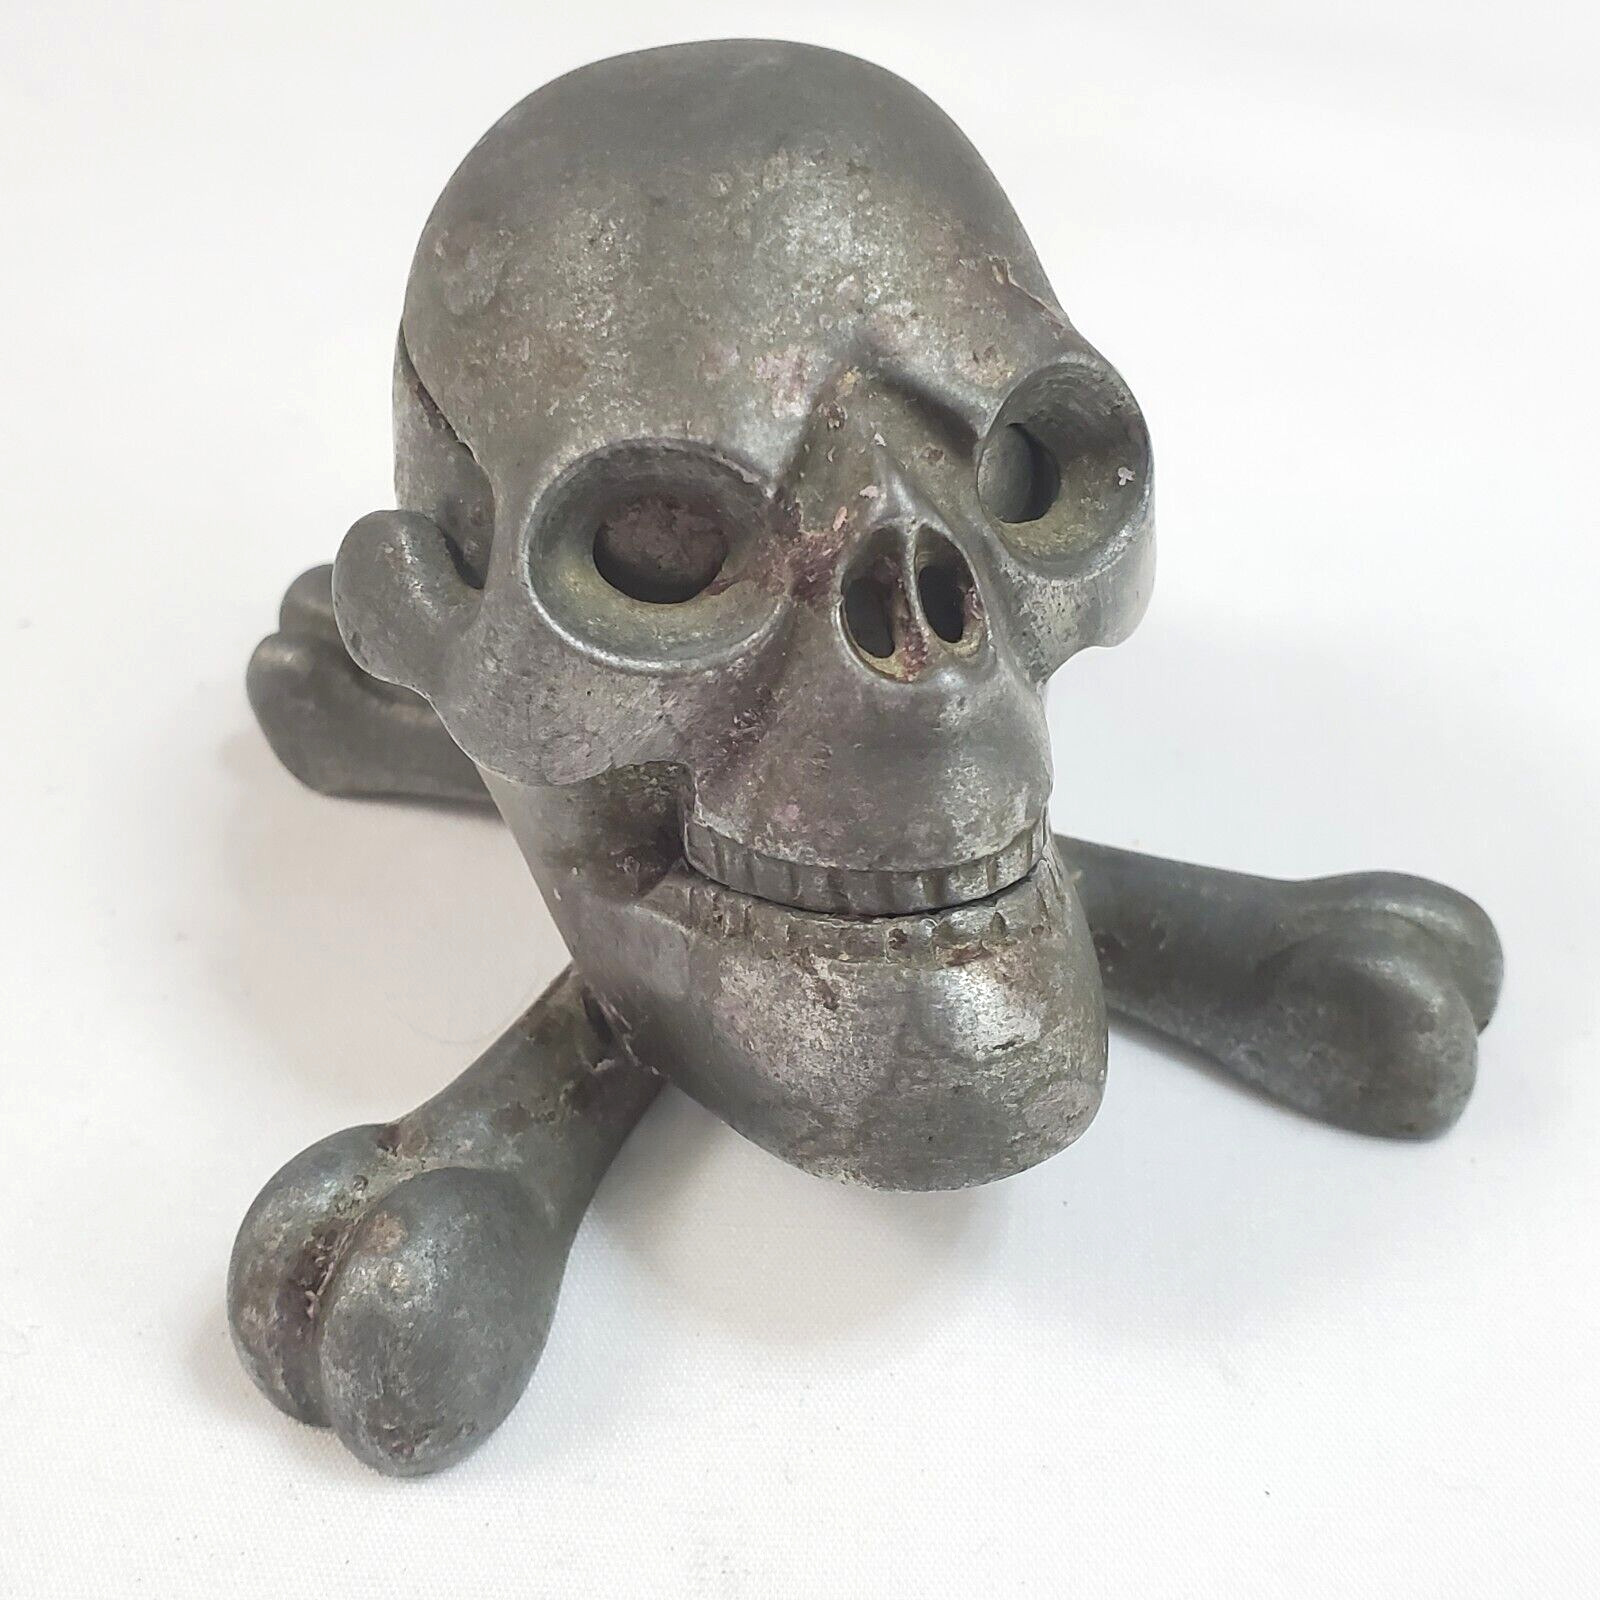 Metal Skull Inkwell Ink Well With Cross Bones Vintage Very Old